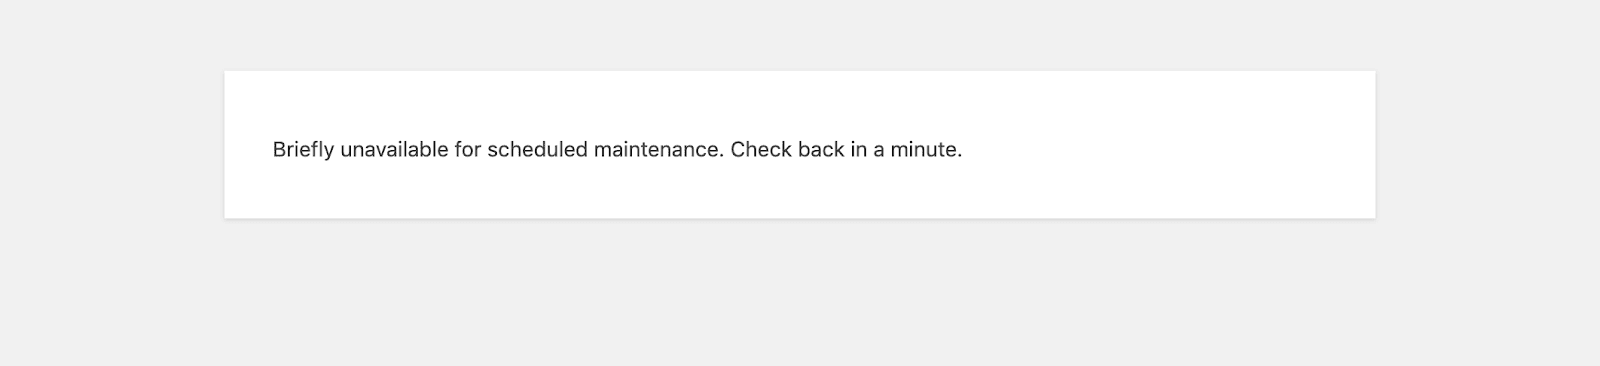 unavailable scheduled maintenance